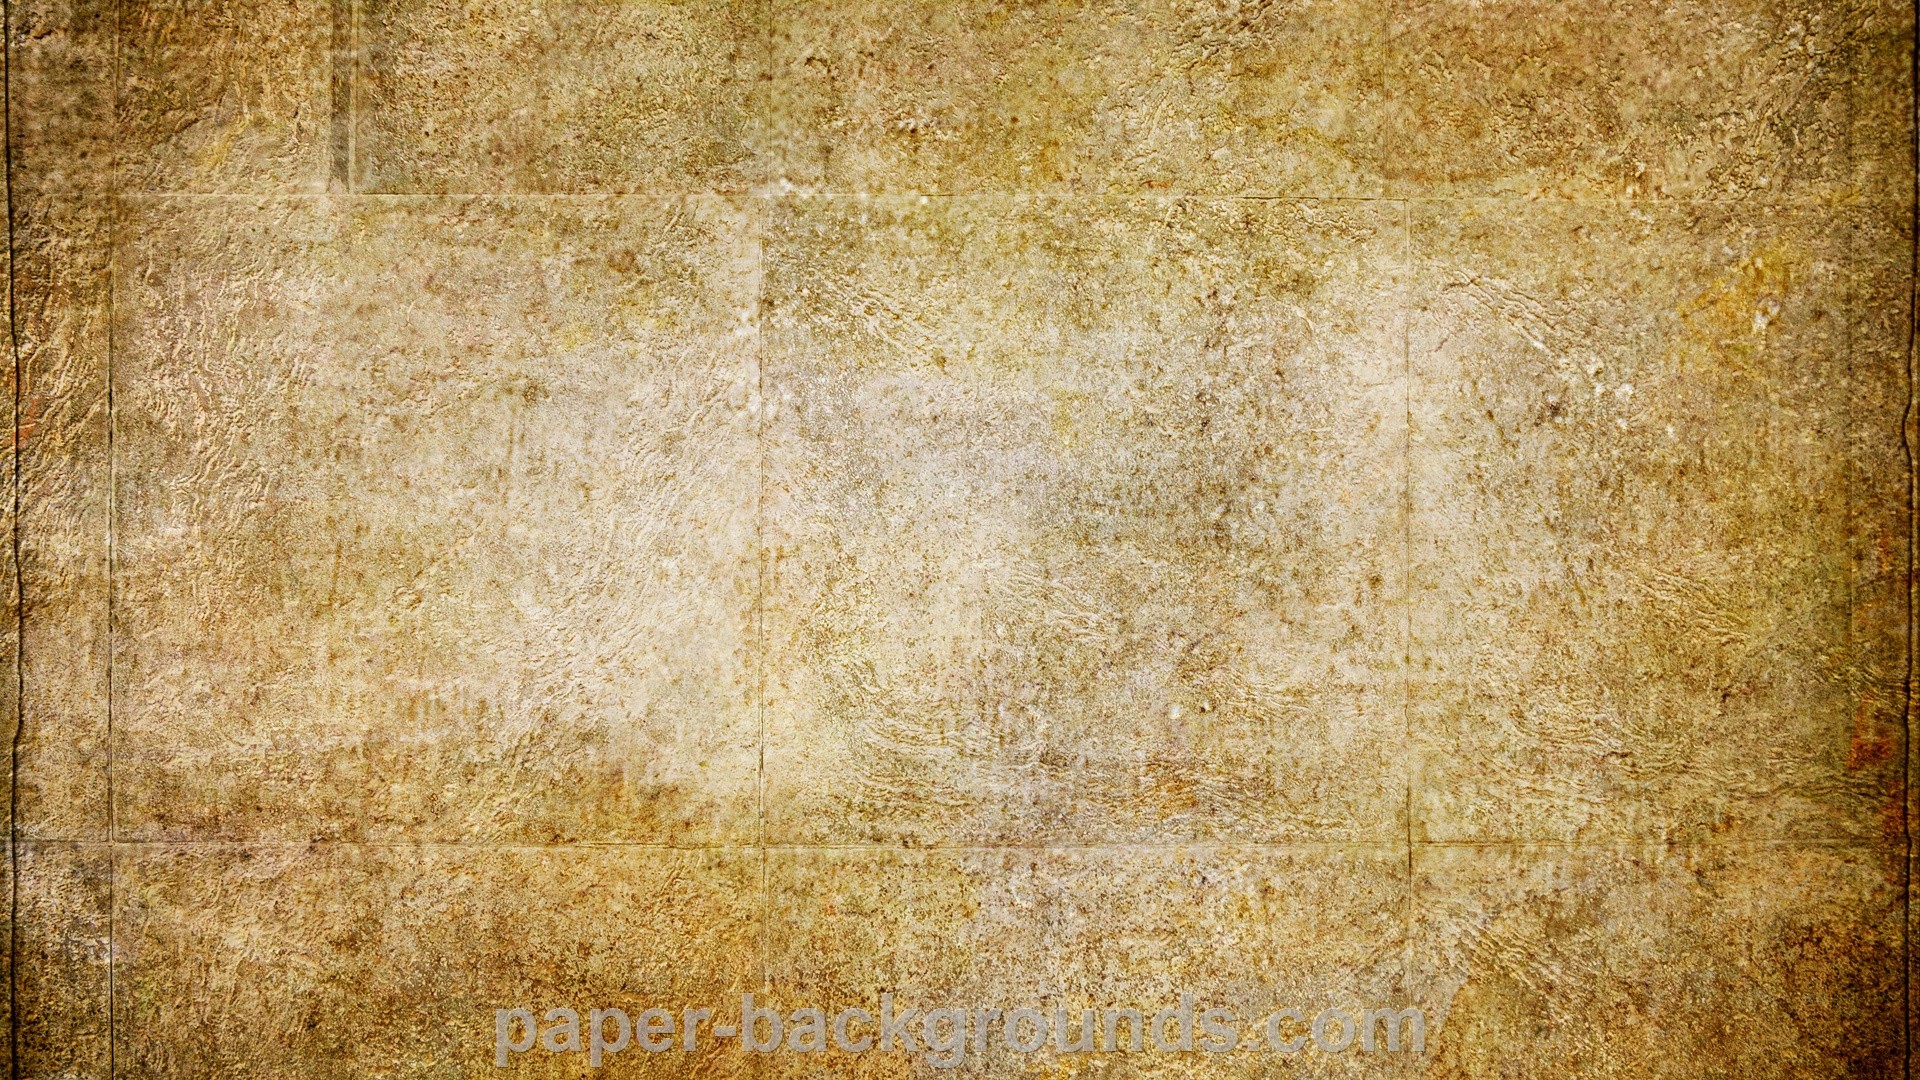 1920x1080 Grunge Texture Background wallpaper